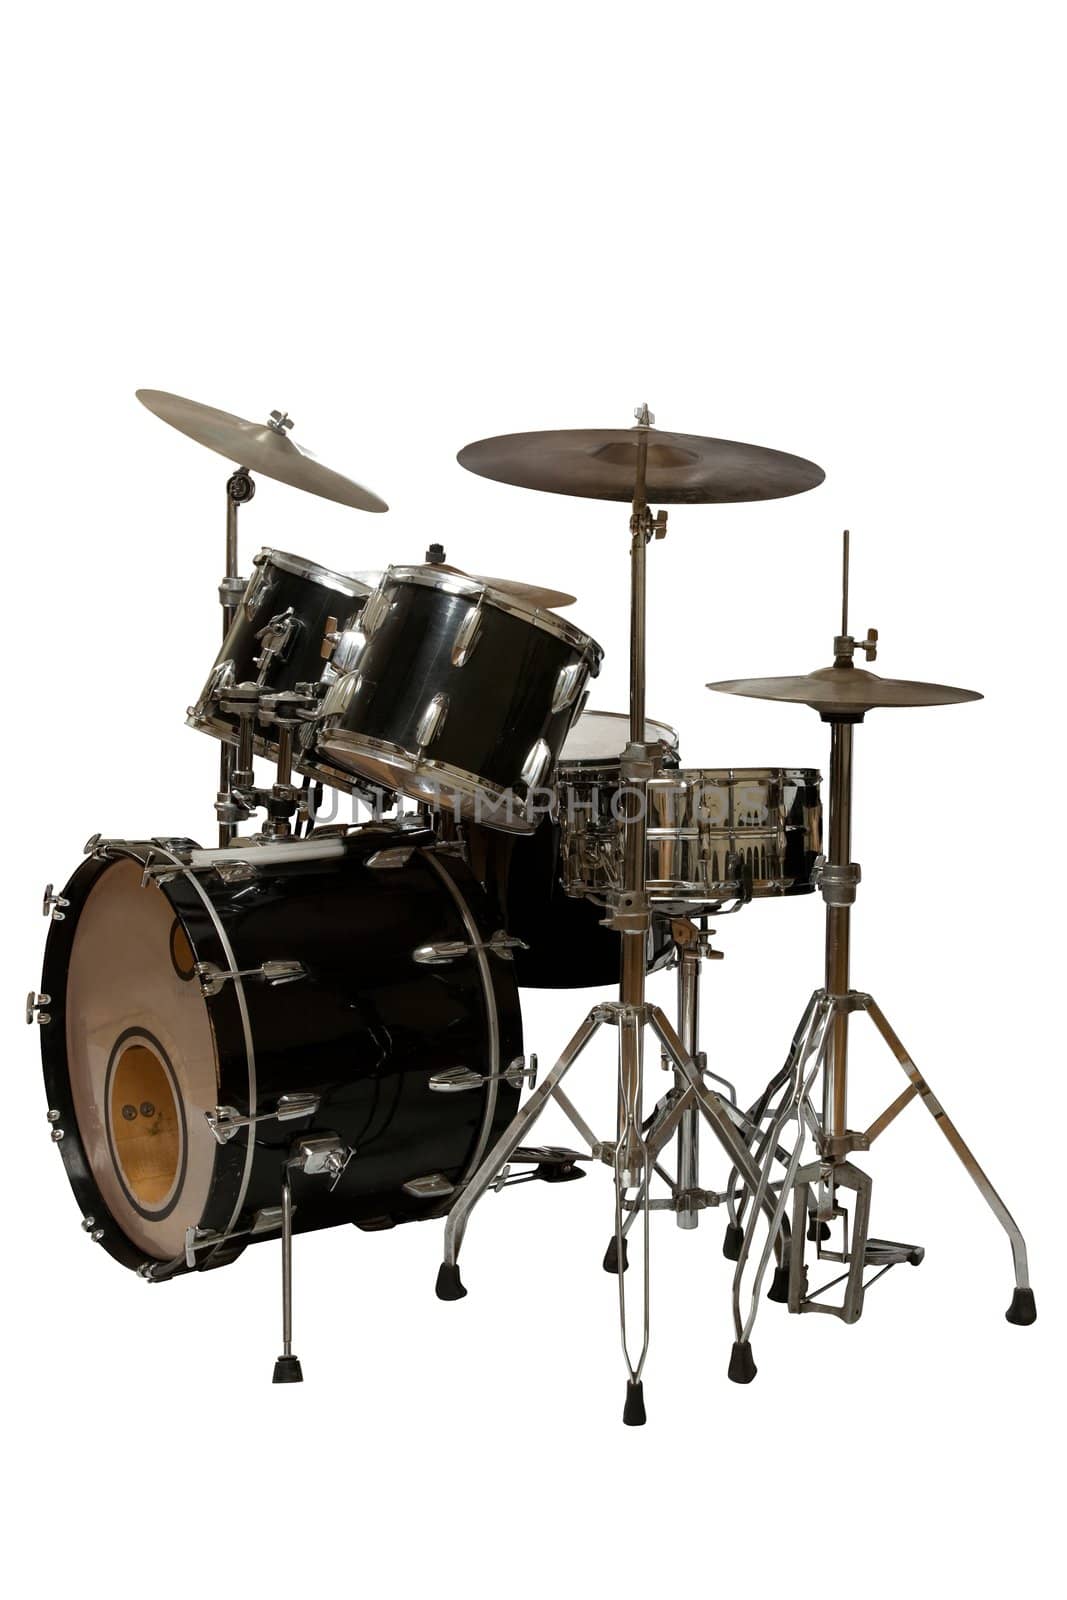 five piece drum kit (white background)